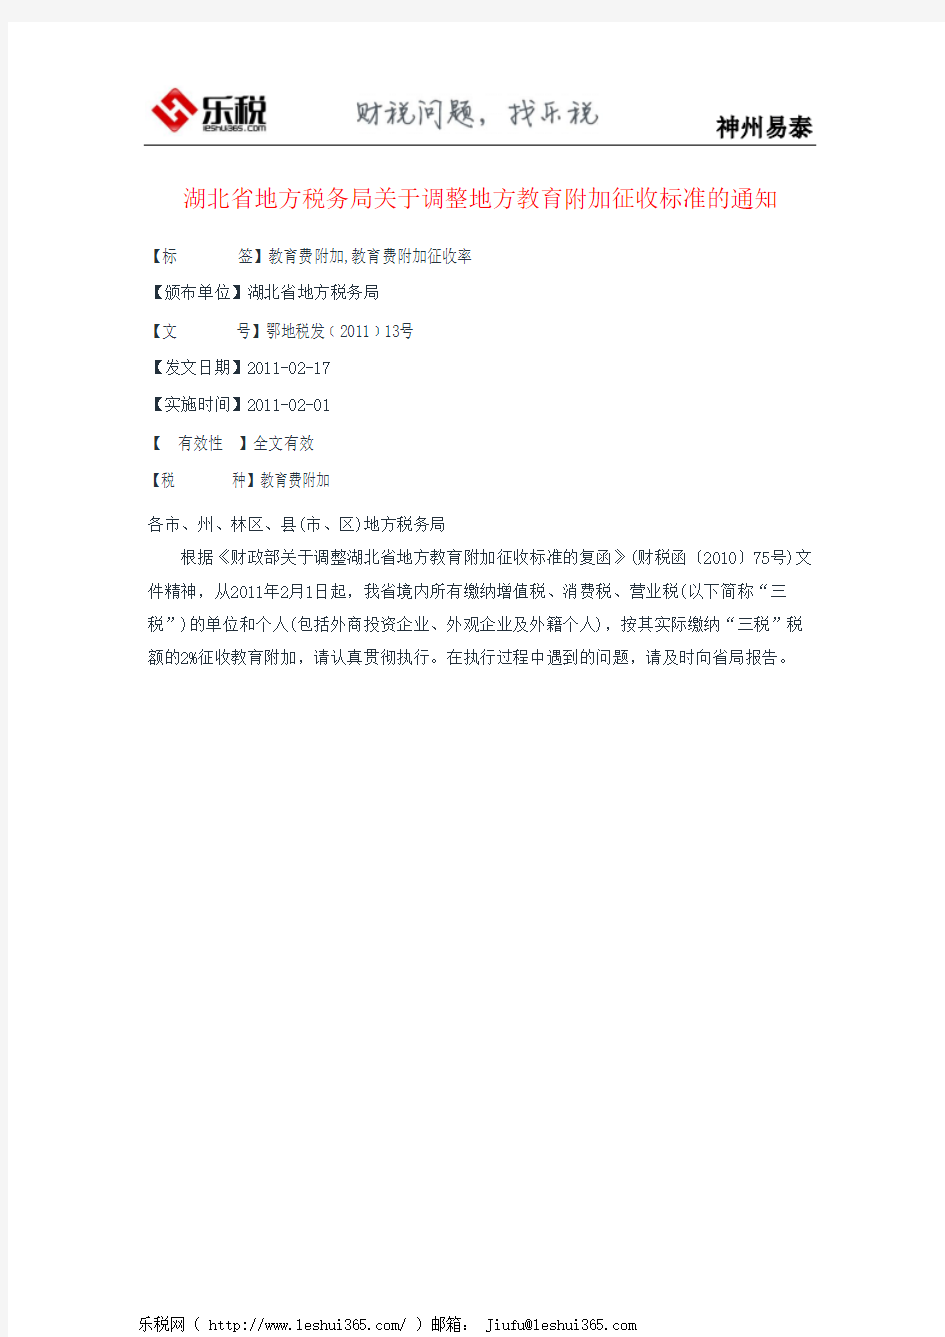 湖北省地方税务局关于调整地方教育附加征收标准的通知